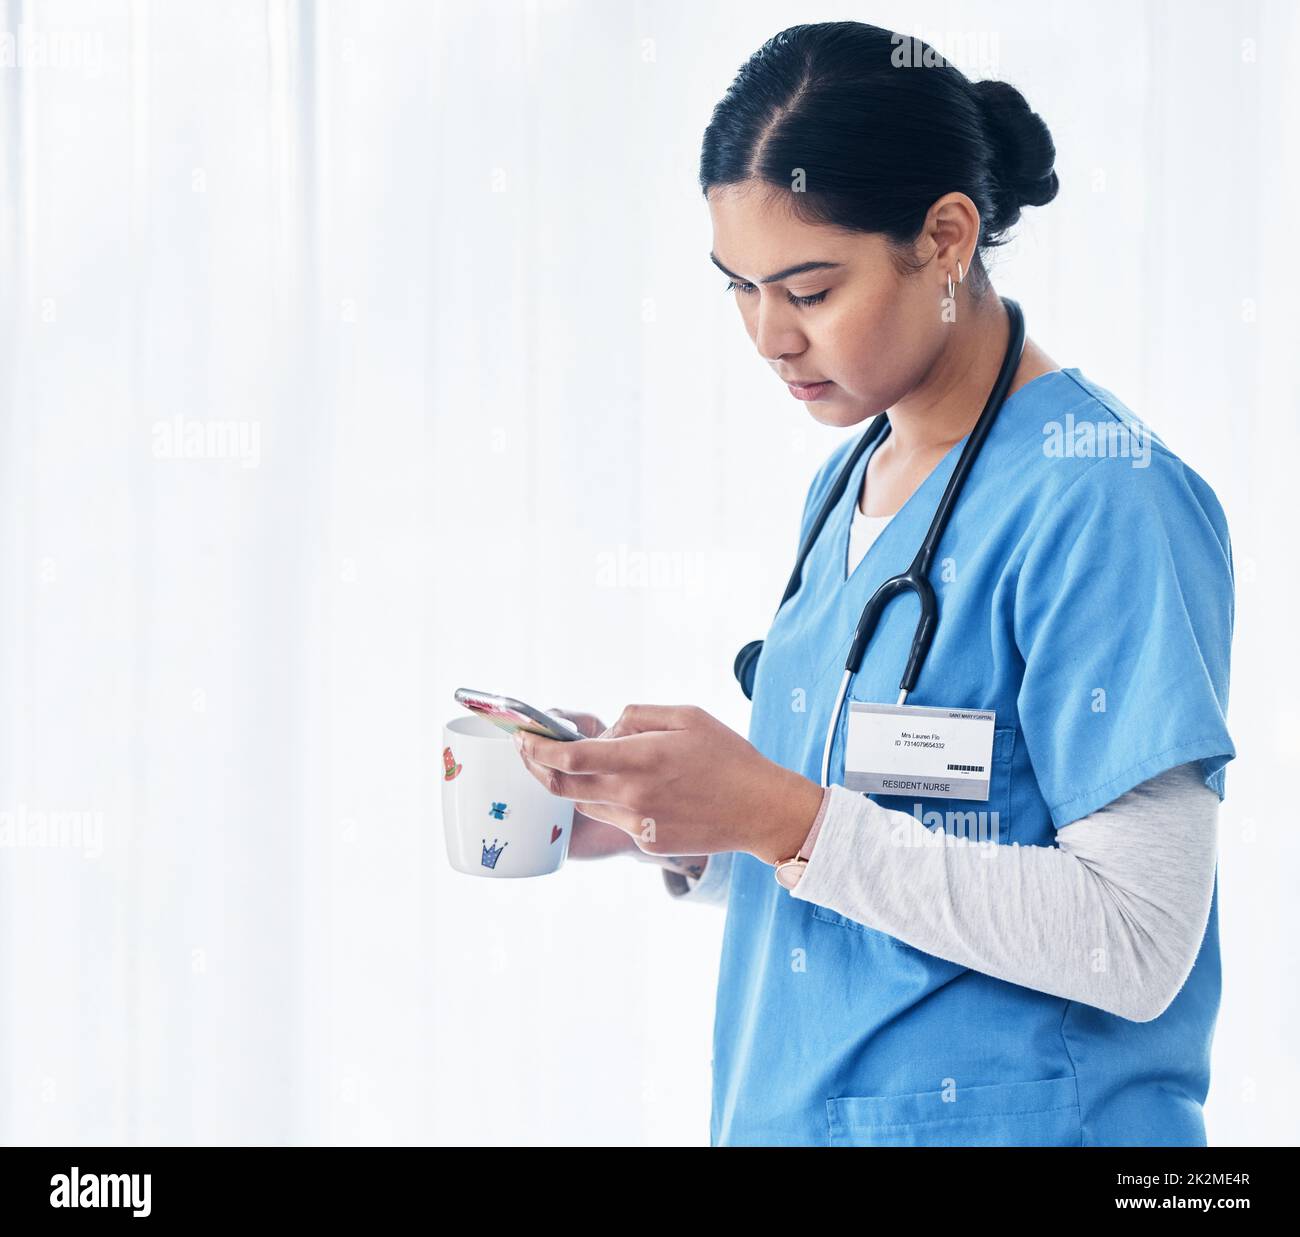 Chatta ora in pausa. Shot di un'infermiera femminile che tiene una tazza di caffè mentre usa il suo cellulare. Foto Stock